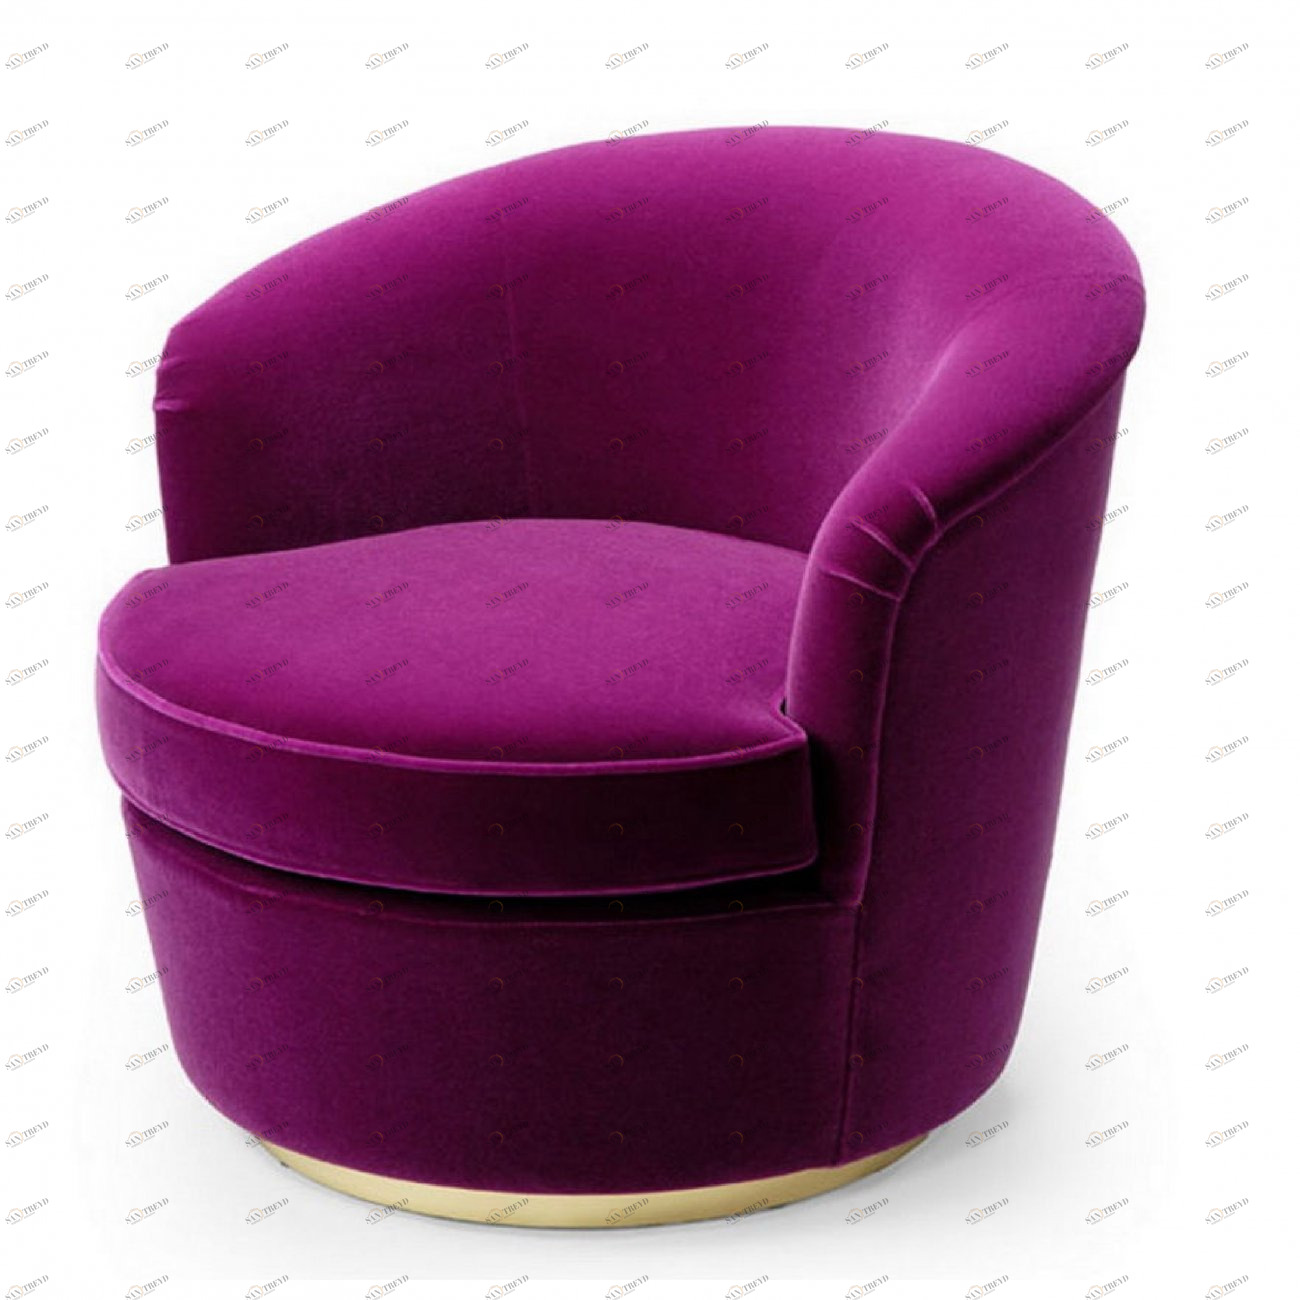 Мягкие кресла магазин. Кресло вращающееся dt1565 фиолетовое. Кресло компактное. Маленькое кресло.